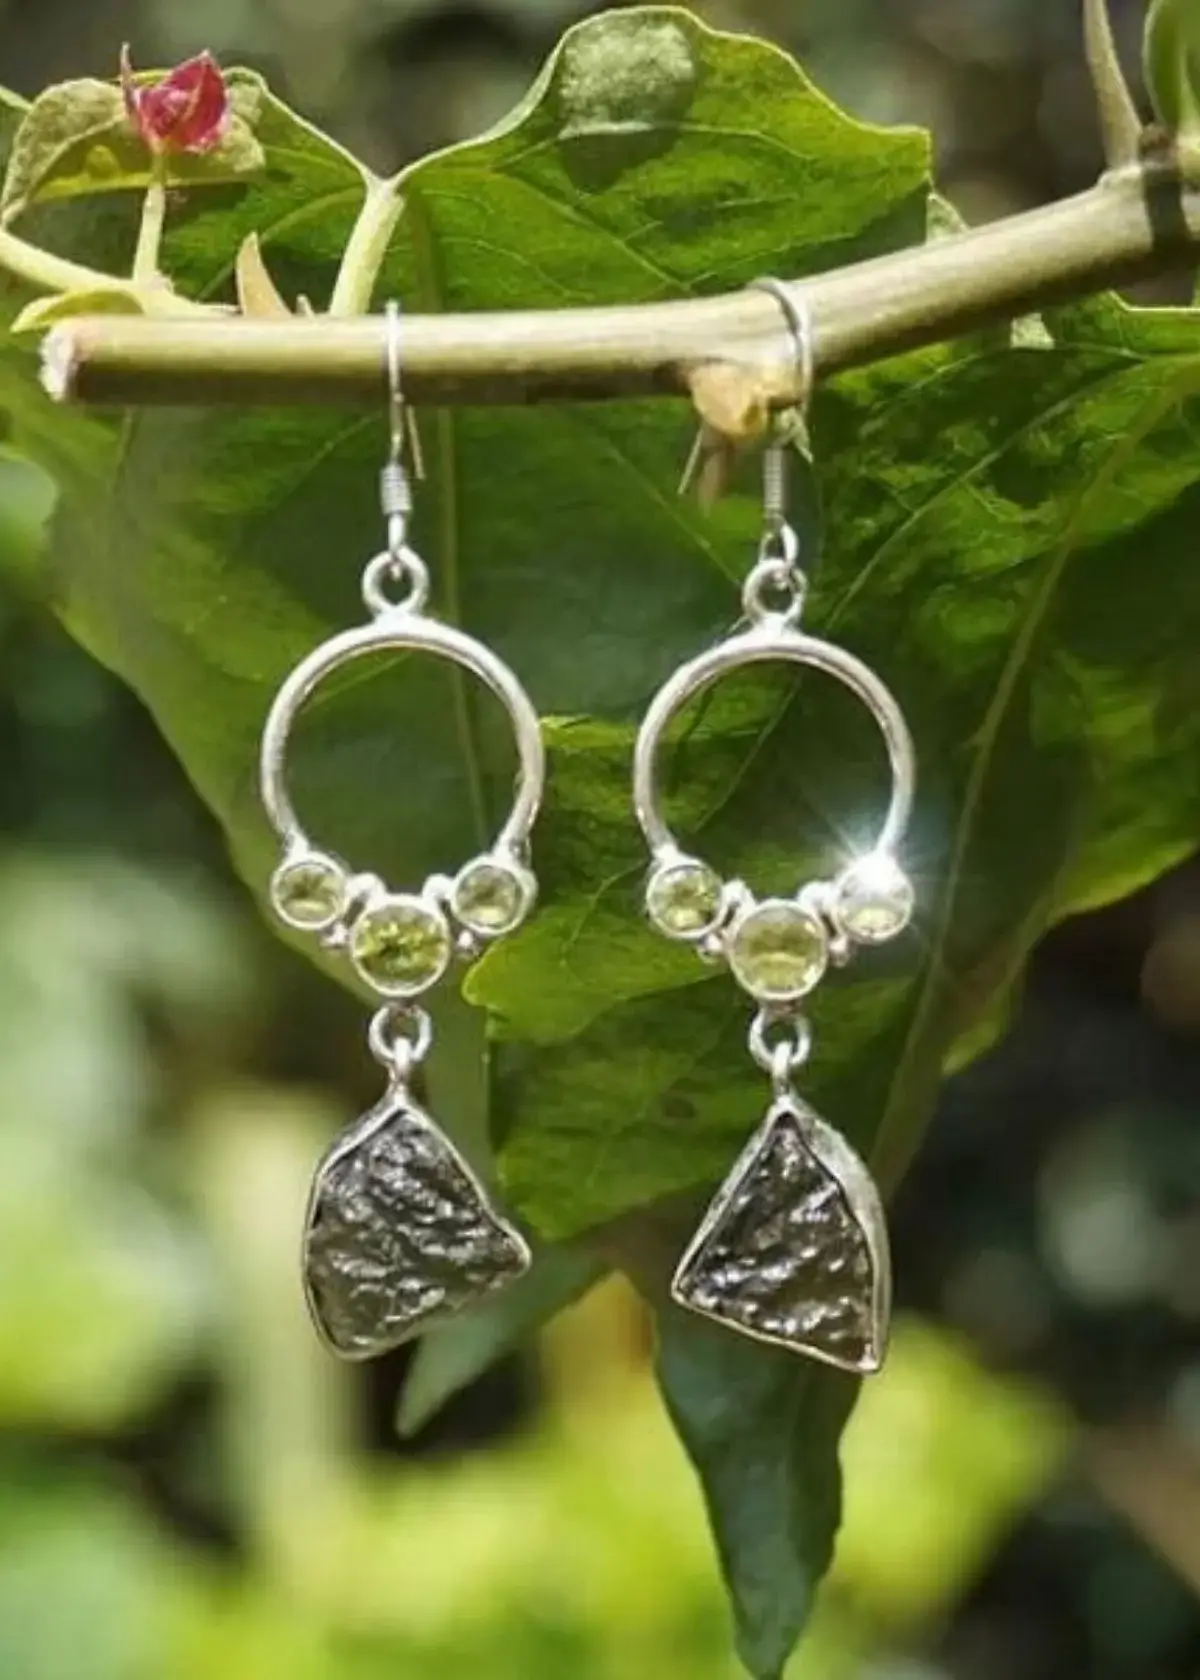 What are Moldavite earrings?